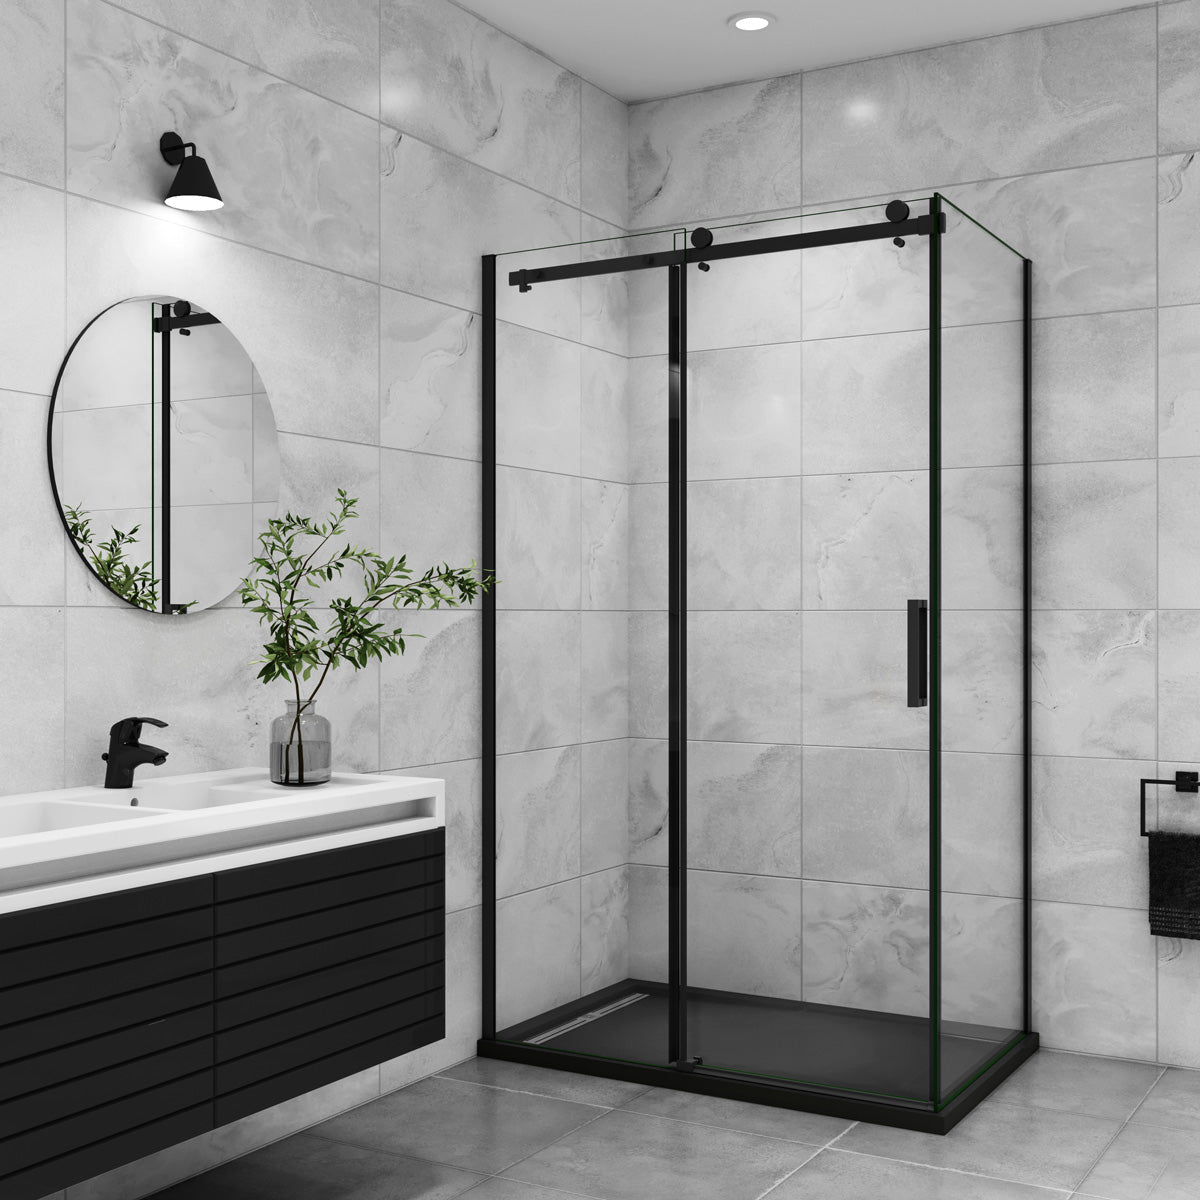 Duschtür+Seitenwand Dusche Duschabtrennung 120x80 cm Höhe 200cm Schiebetür Duschkabine